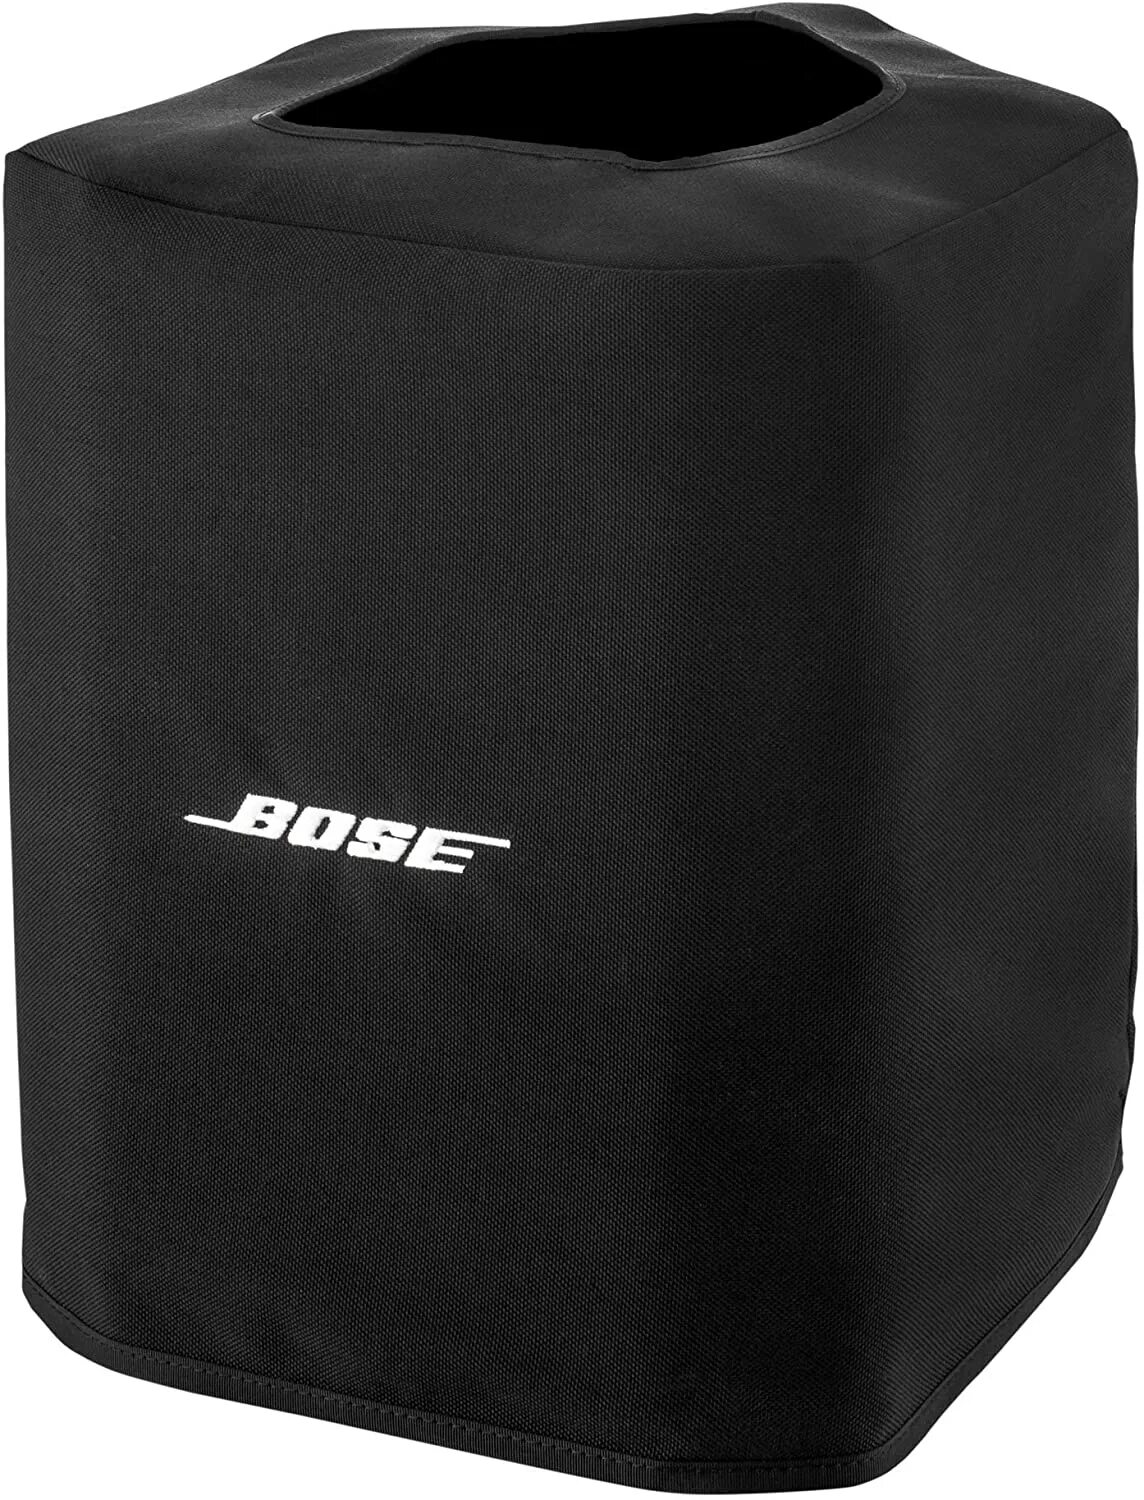 Bose s1 Pro чехол. Bose s1 Pro. Колонка Bose s1 Pro. Bose s1 Pro Slip Case.